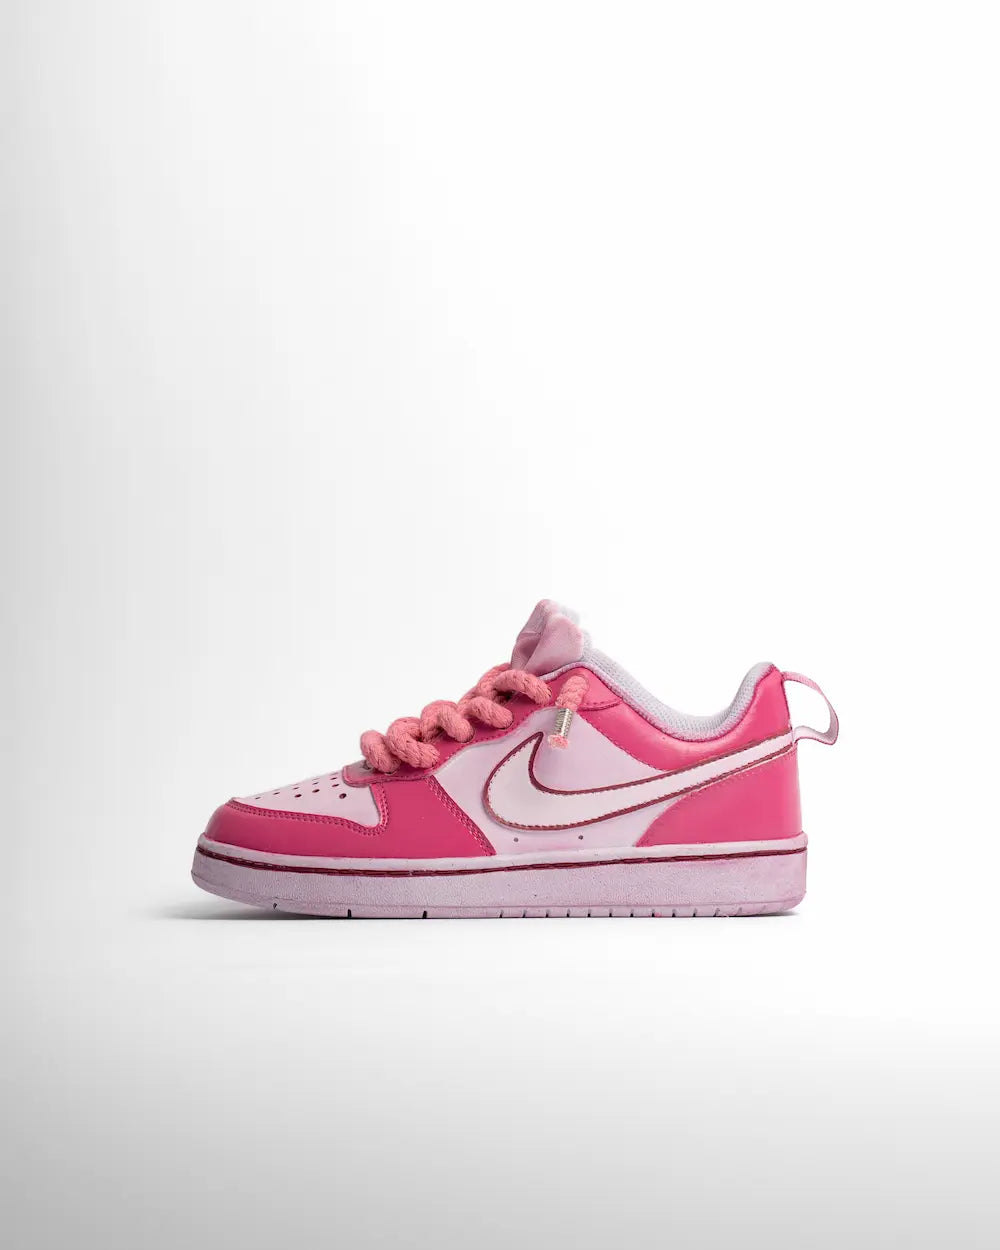 Nike Court Borough personalizzata con tintura in due tonalità di rosa e lacci in corda rosa pastello